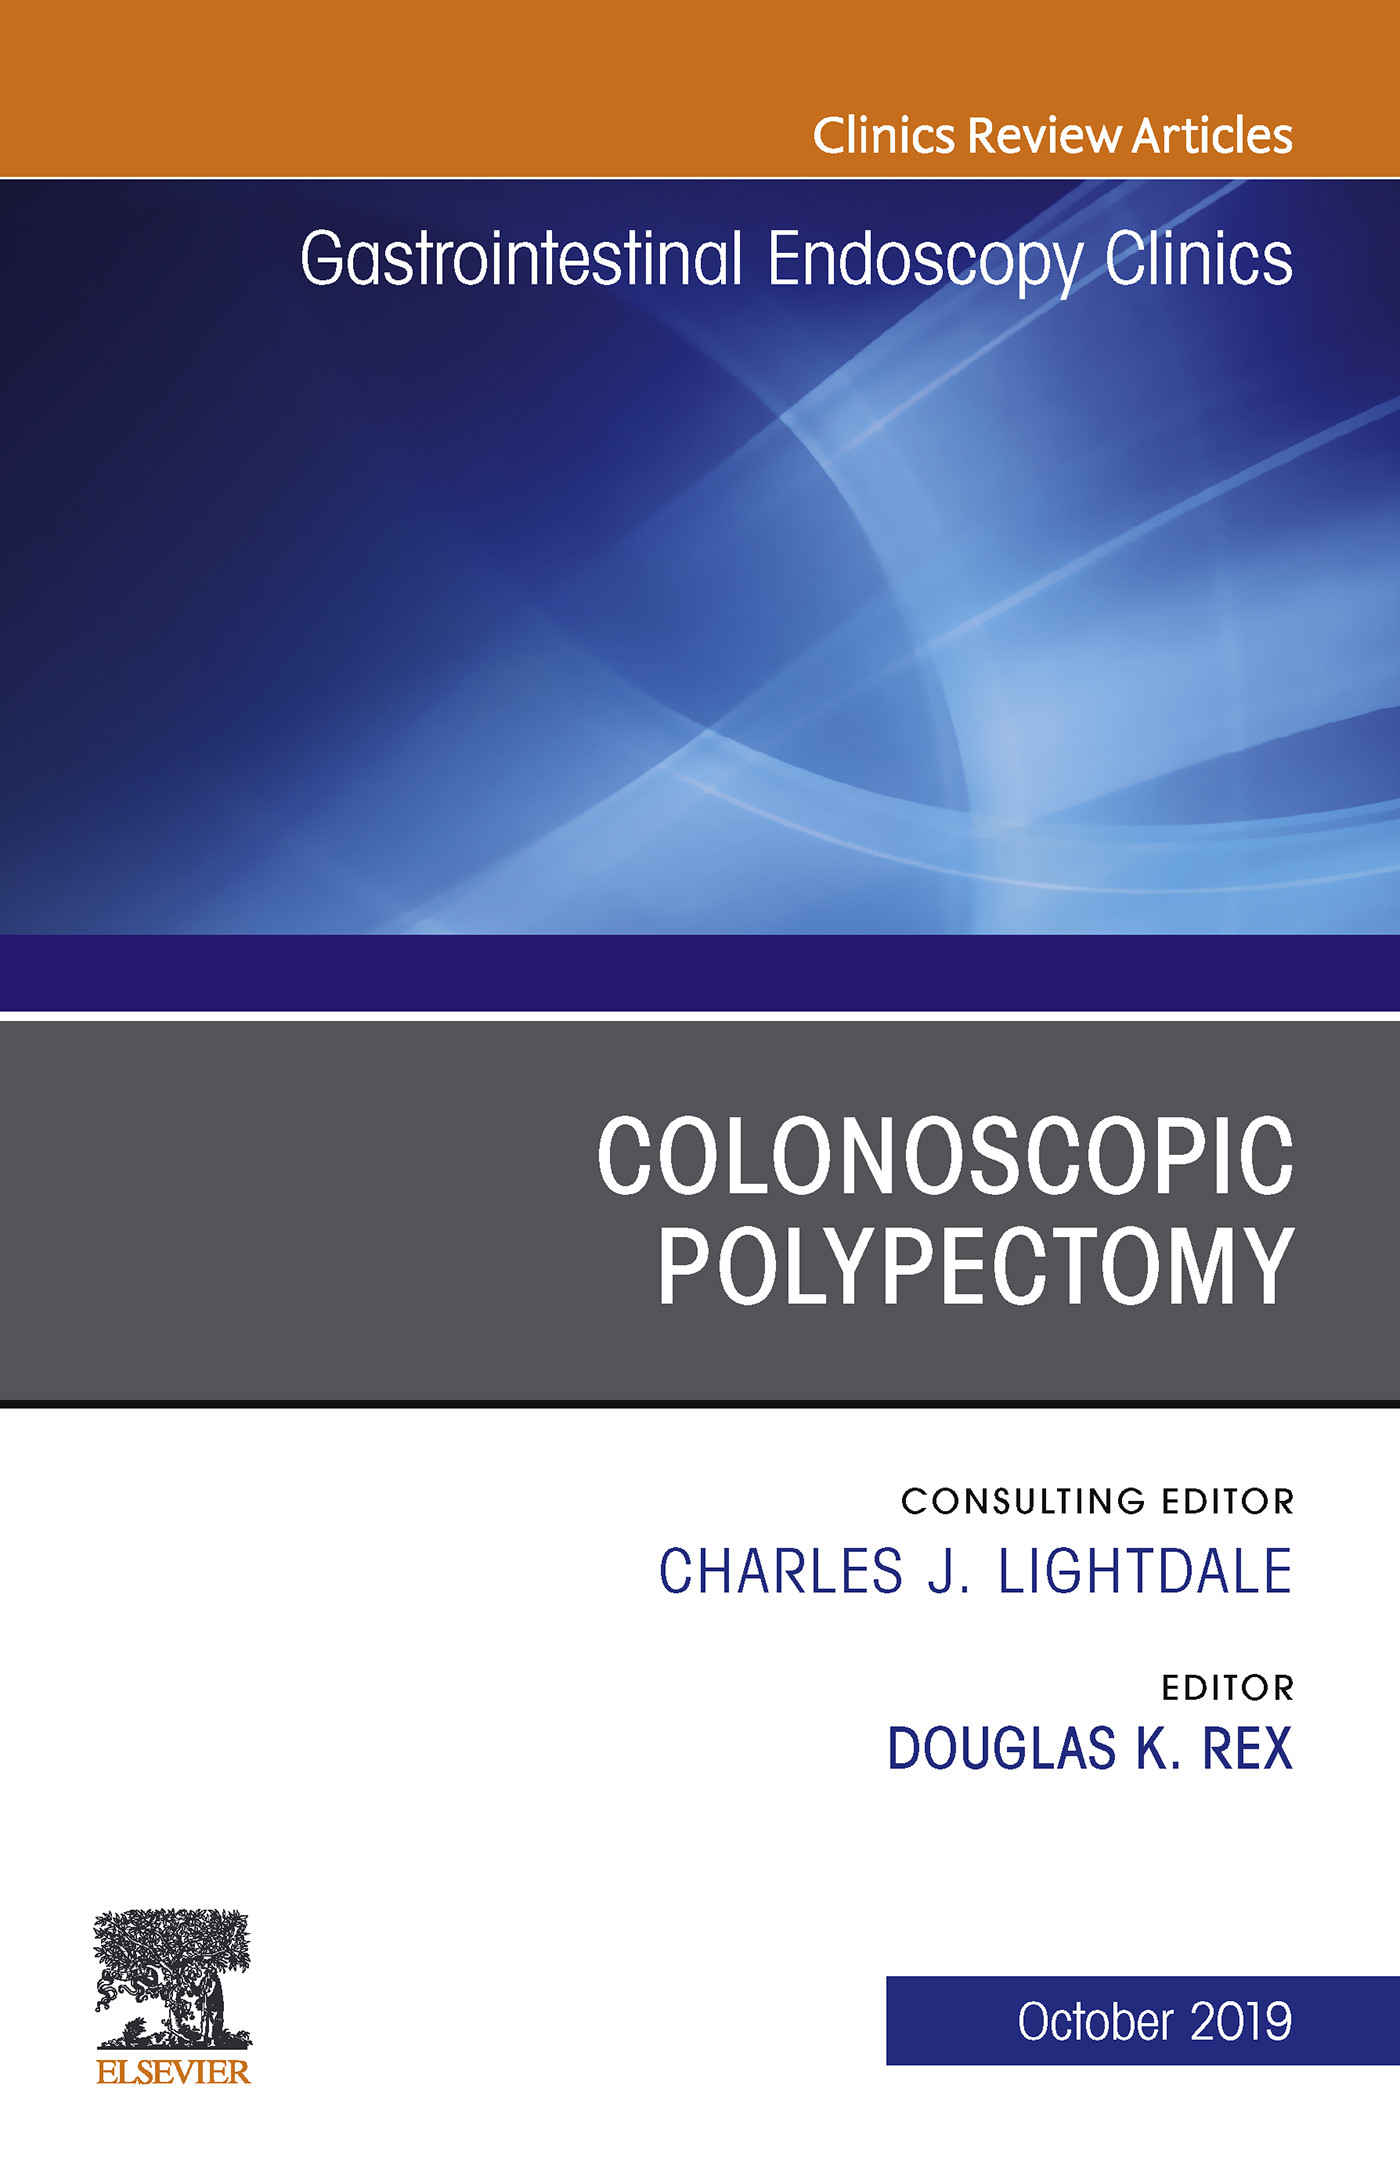 Colonoscopic Polypectomy, An Issue of Gastrointestinal Endoscopy Clinics, Ebook